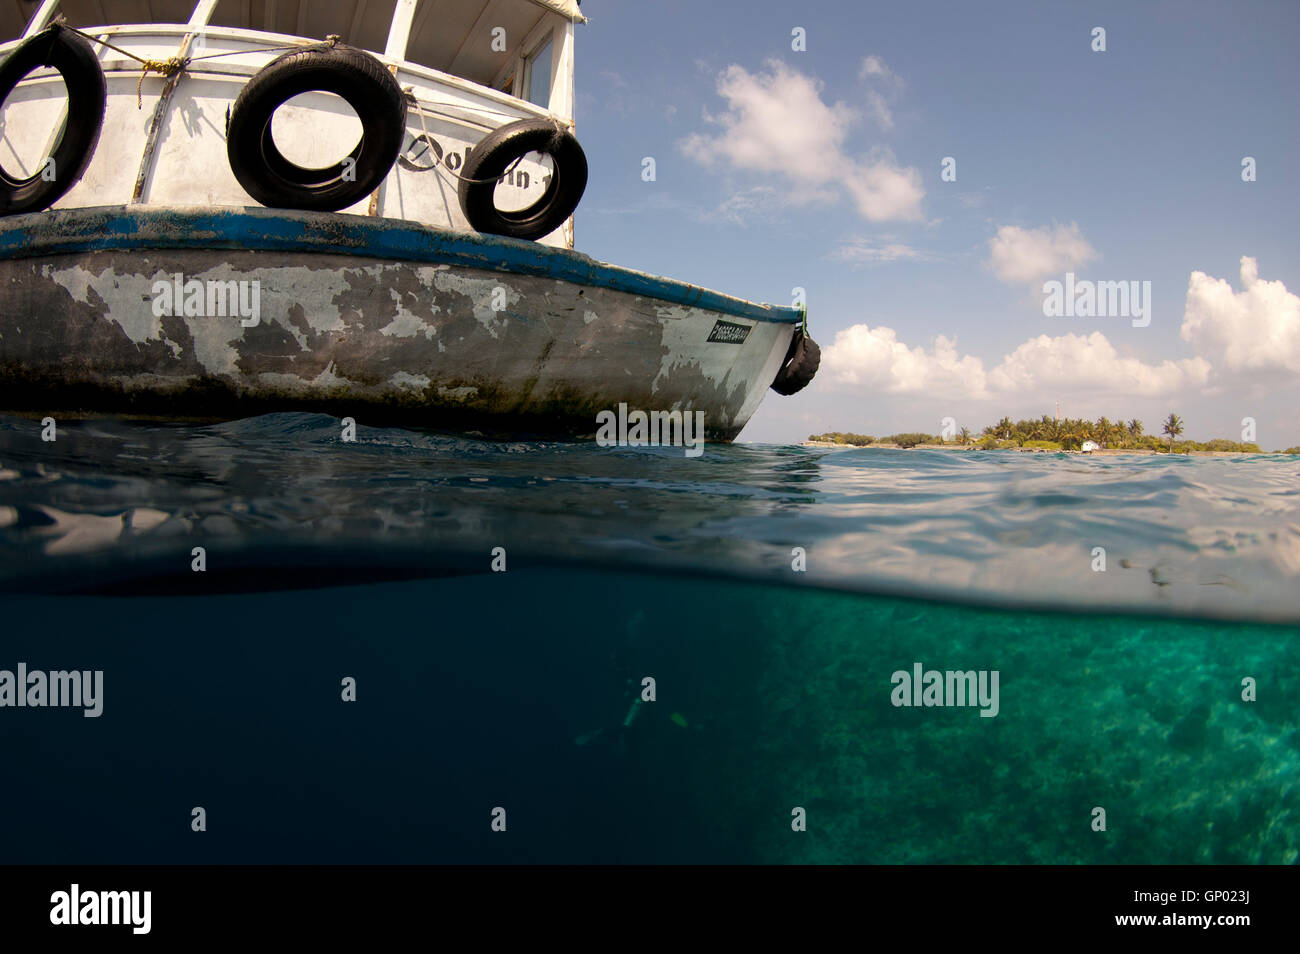 Una barca in attesa per i subacquei al di fuori della barriera corallina di feydhoo finolhu in North Male Atoll'. Foto Stock